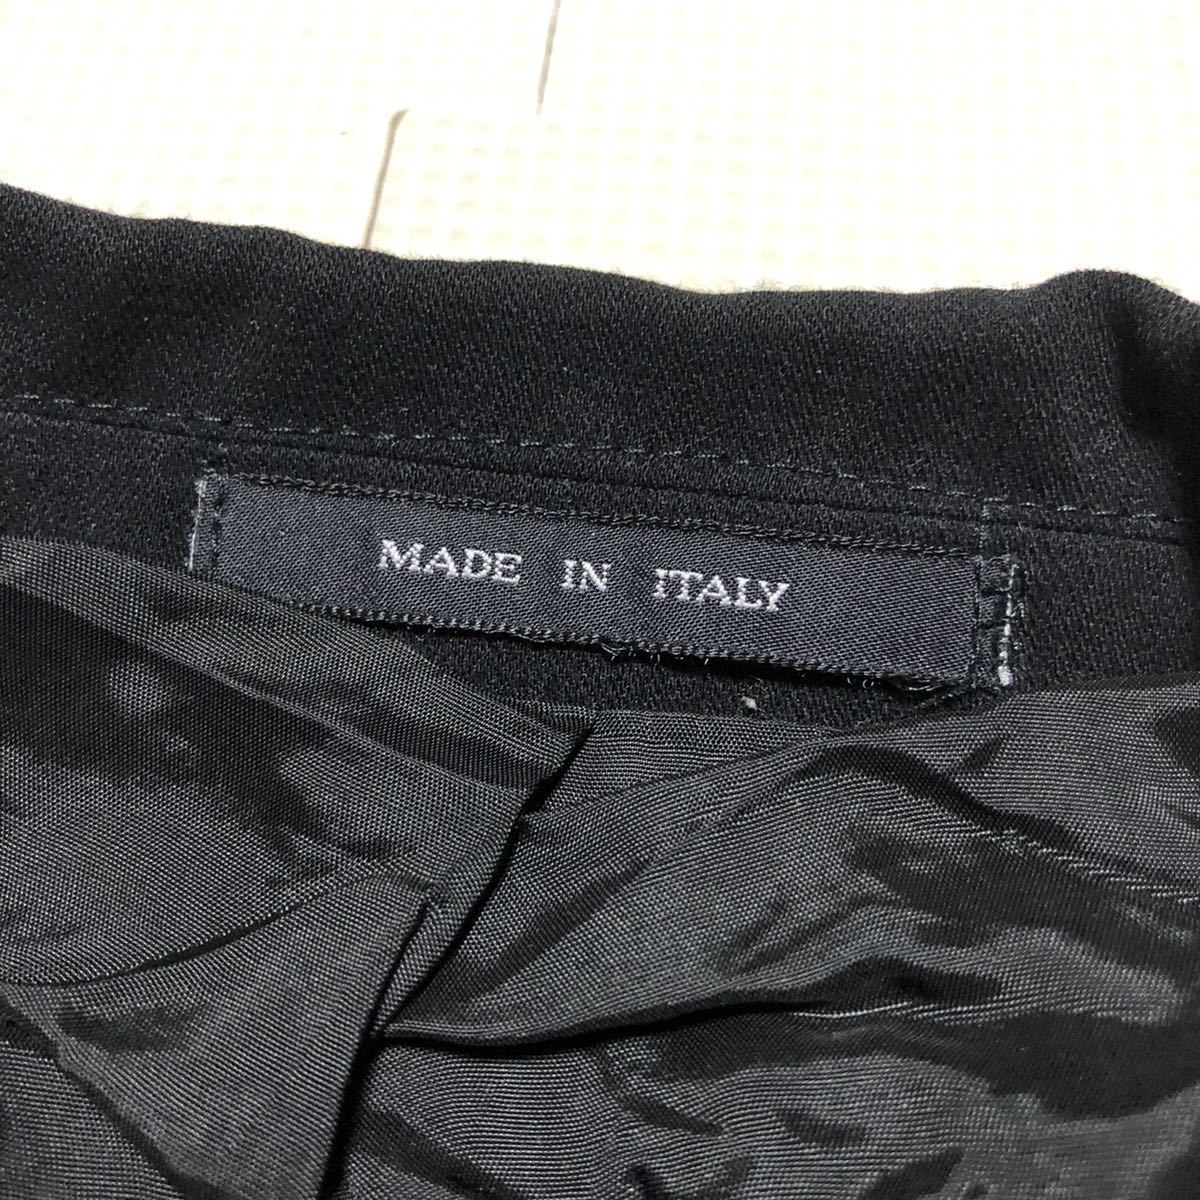 EMPORIO ARMANI エンポリオ アルマーニ イタリア製 上下 セットアップ ダブル スーツ パンツ 黒 7